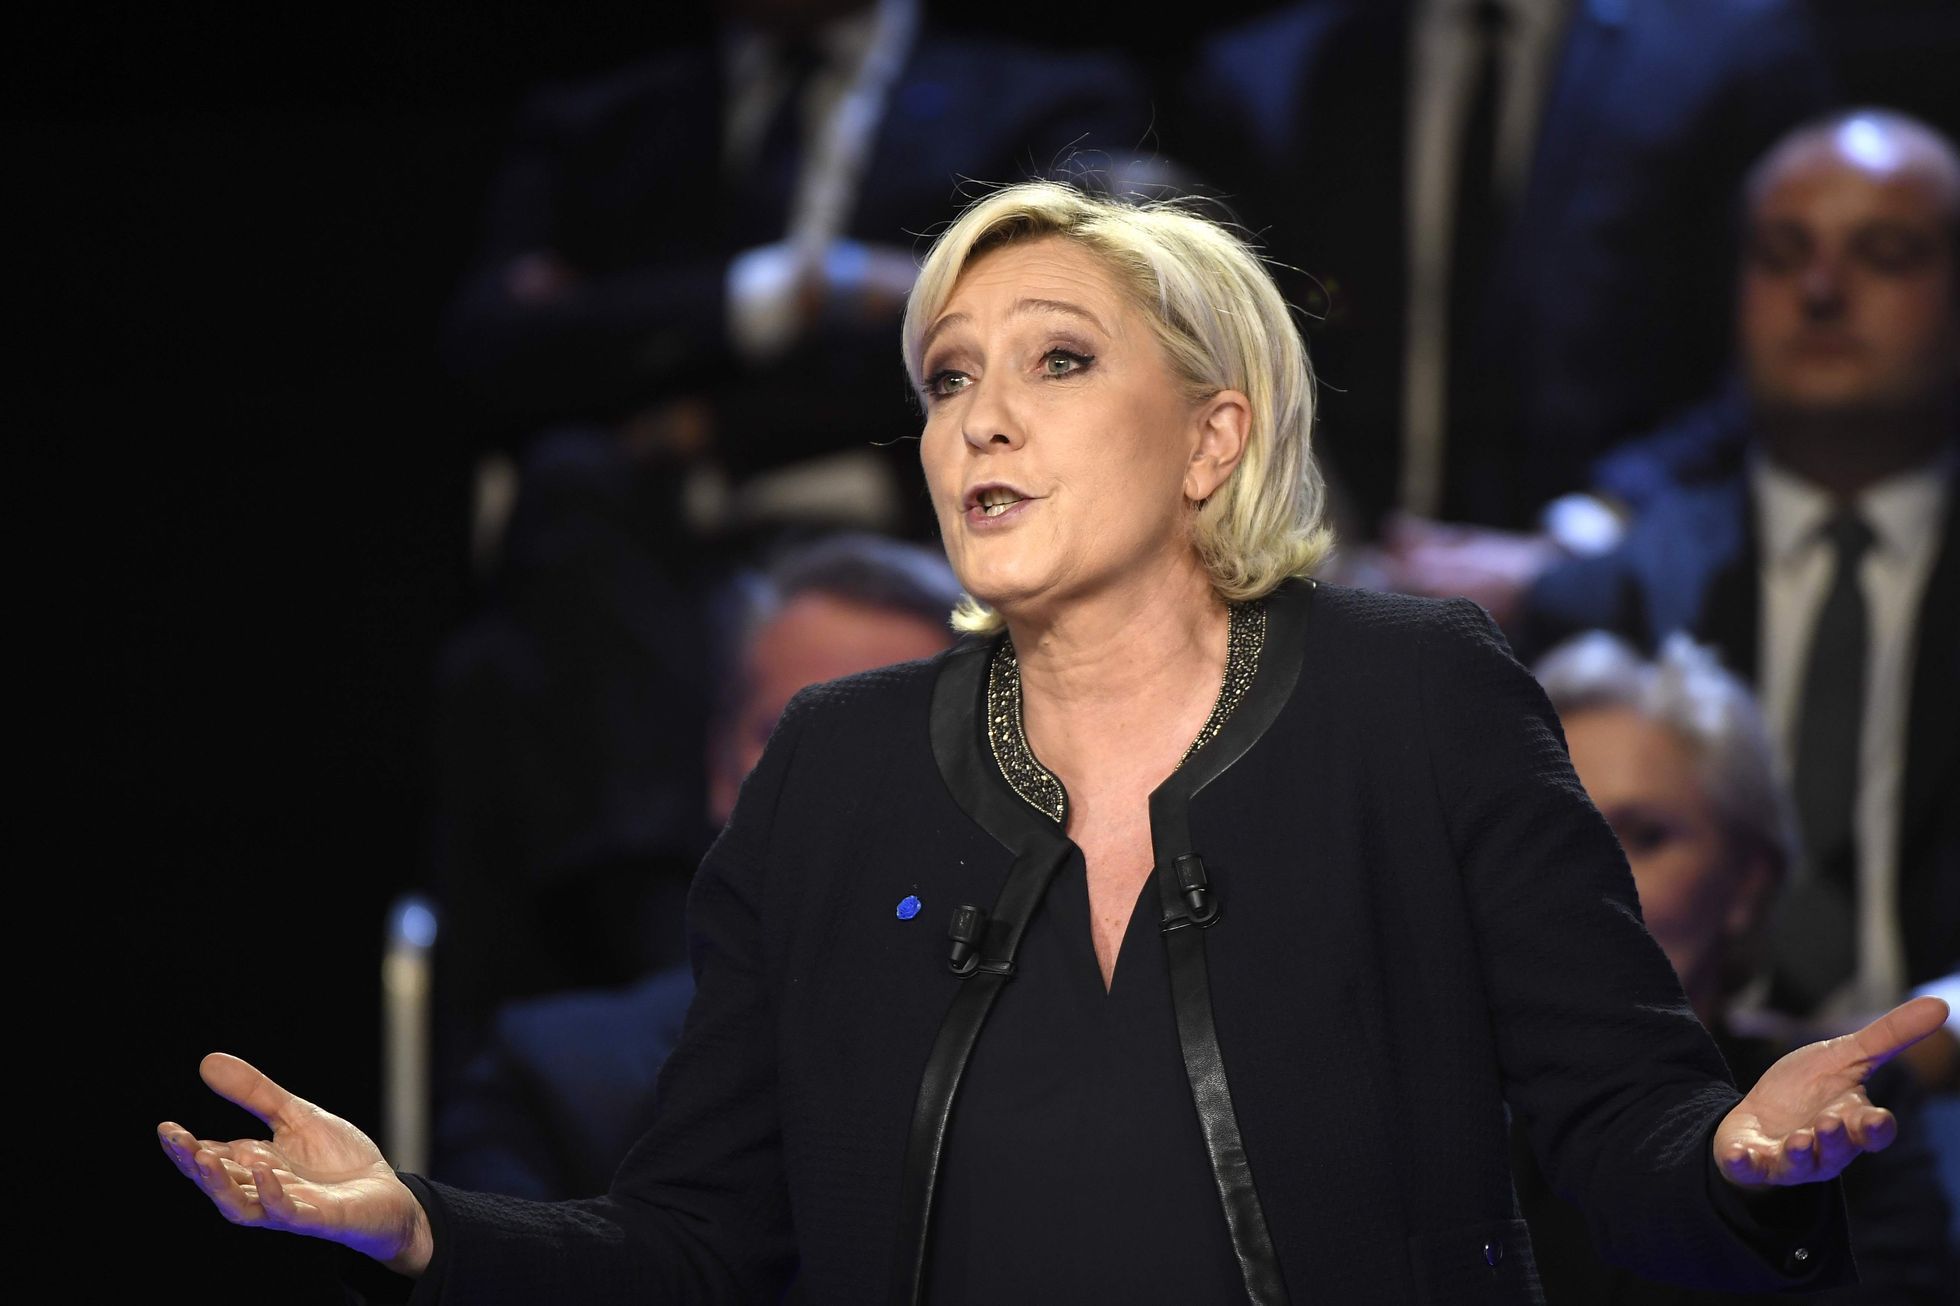 Marine Le Penová v druhé televizní debatě.